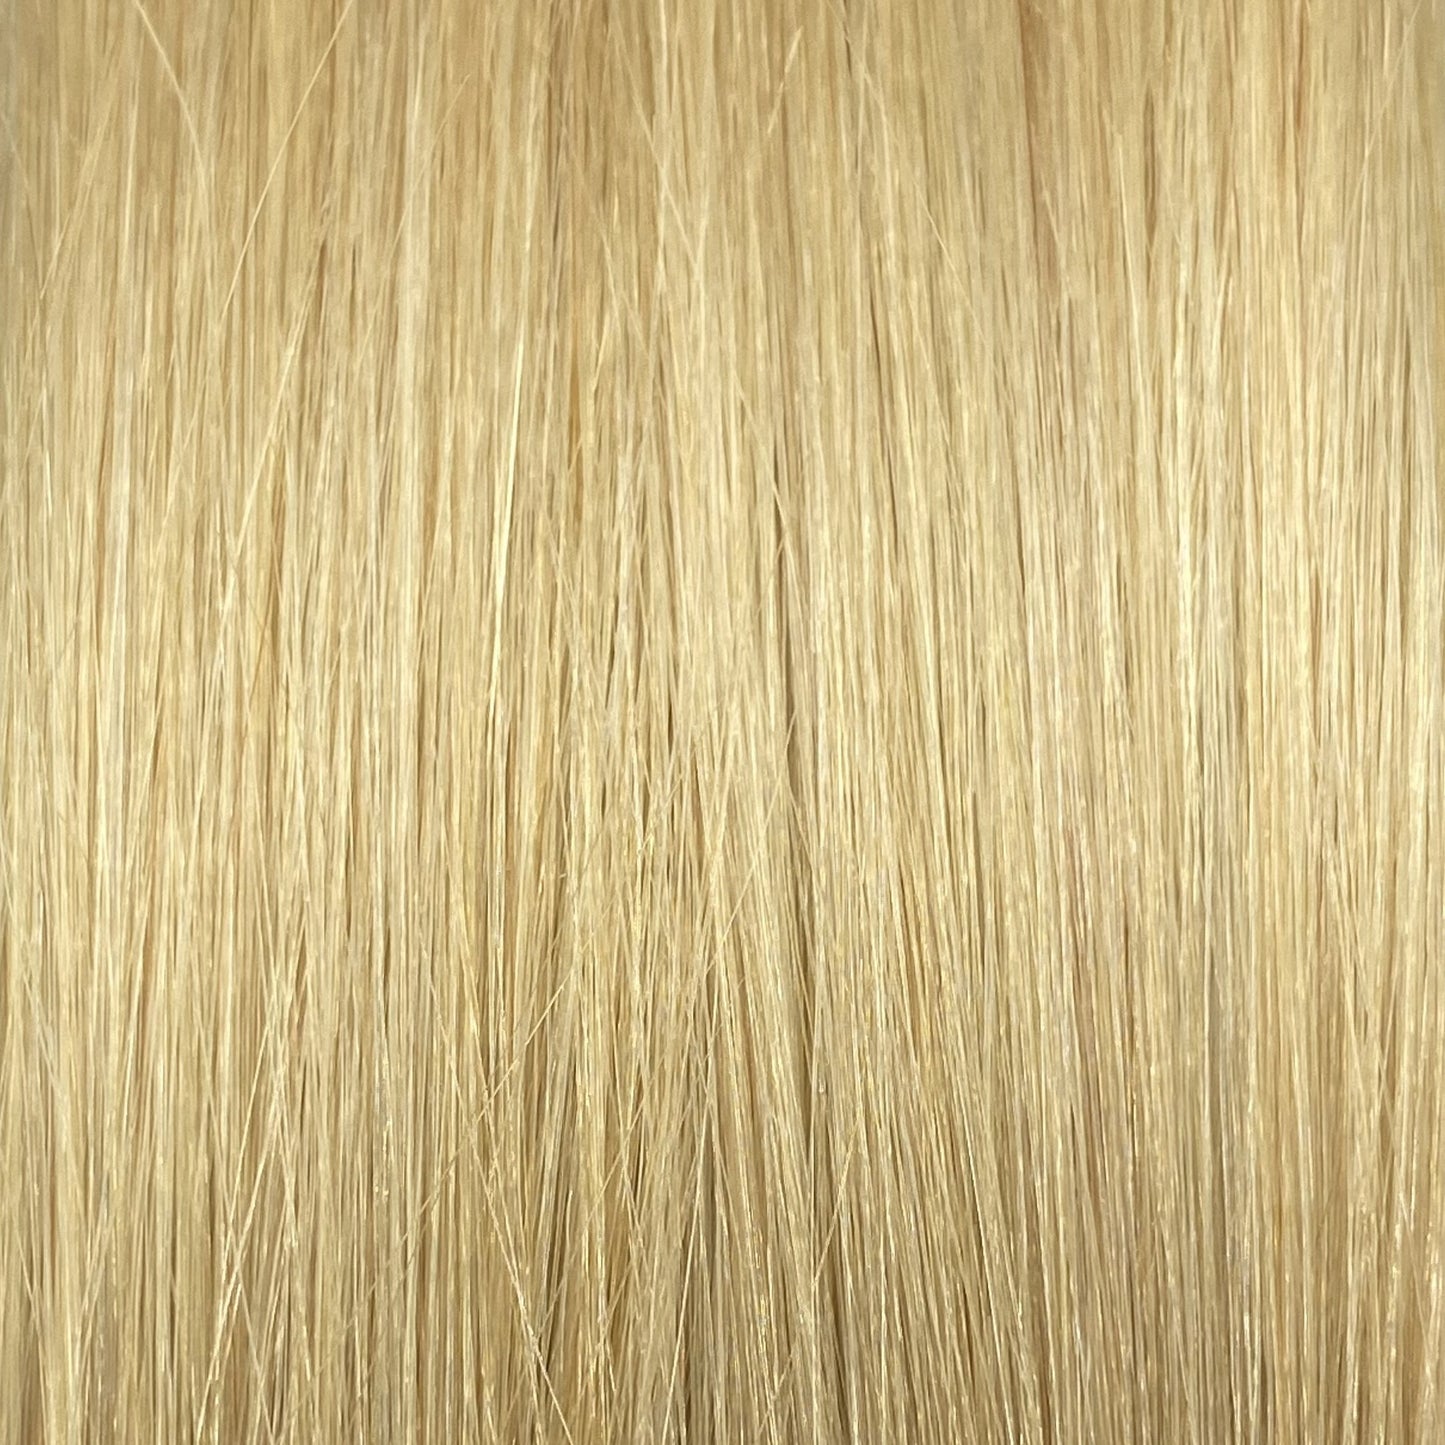 Fusion hair extensions #1001 - 50cm/20 inches - Platinum Blonde Fusion Euro So Cap 